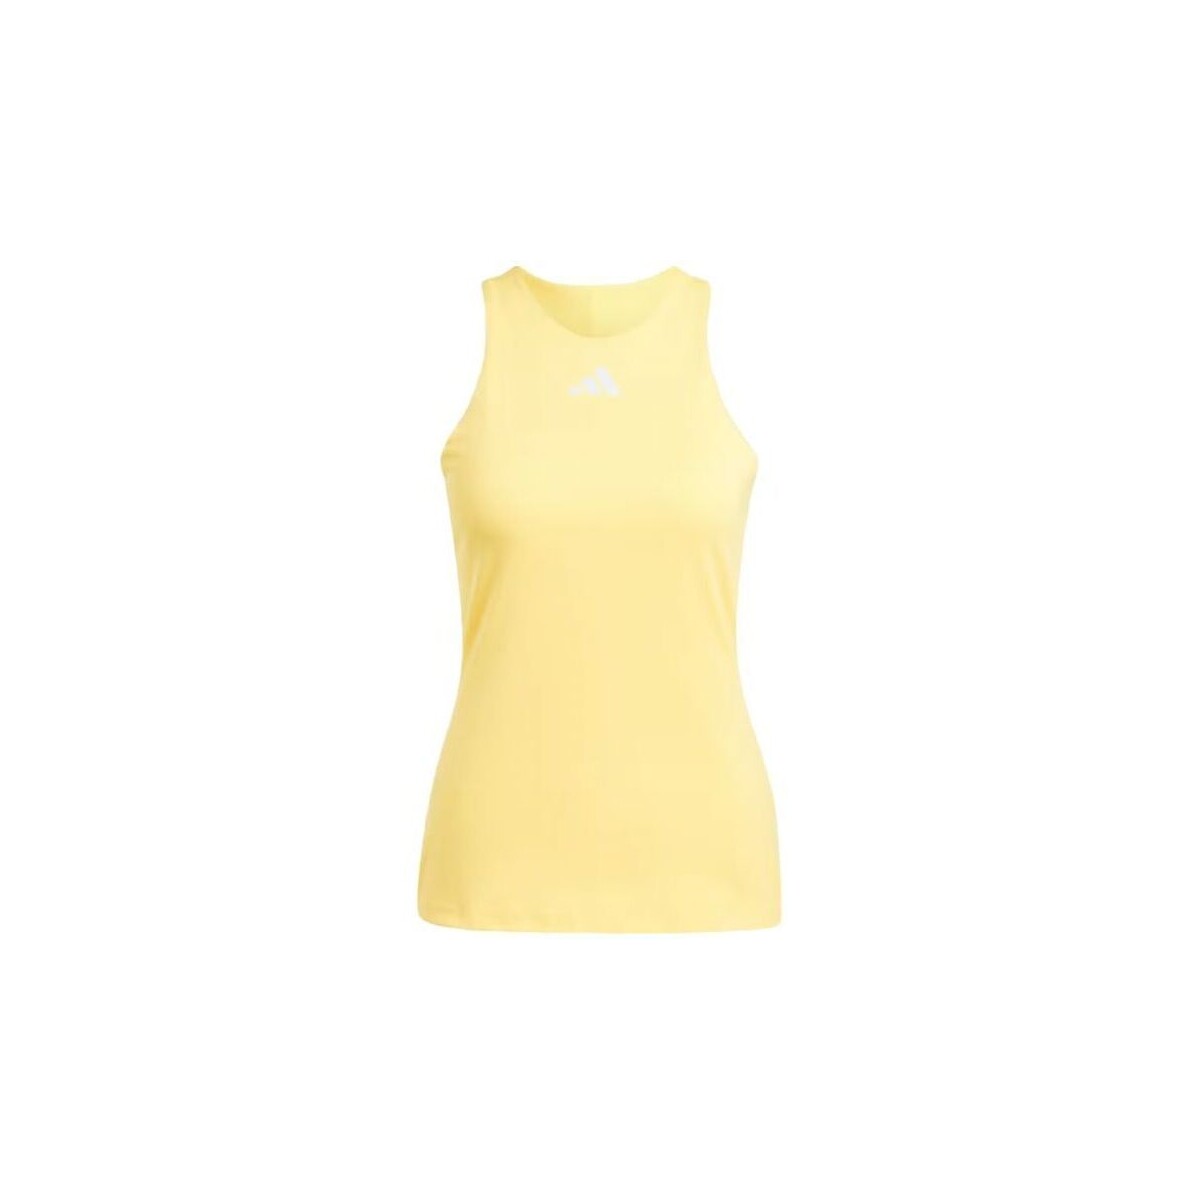 Ropa interior Mujer Camiseta interior adidas Originals Camiseta Y Mujer Spark/White Amarillo